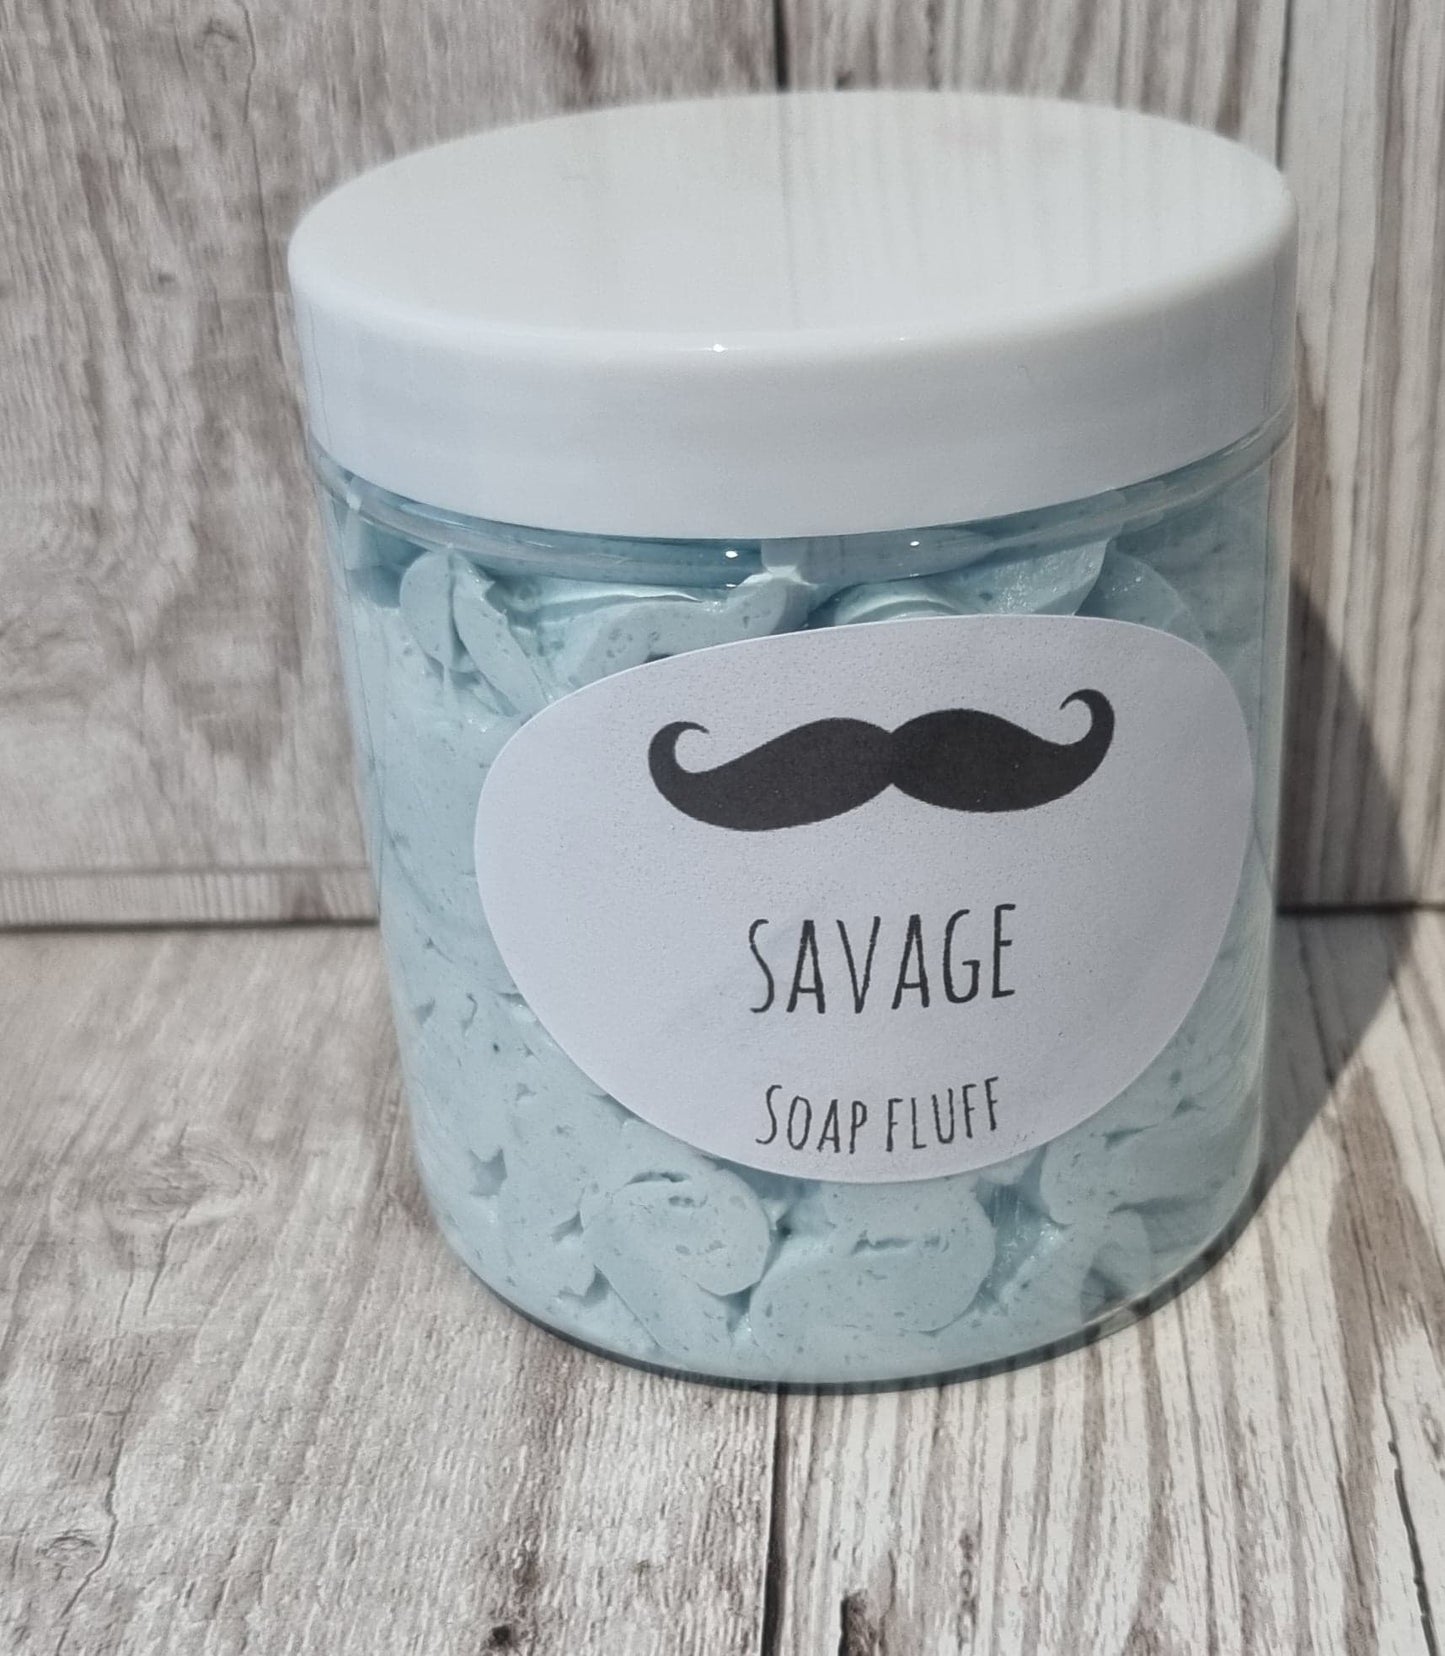 'Savage' Soap Fluff